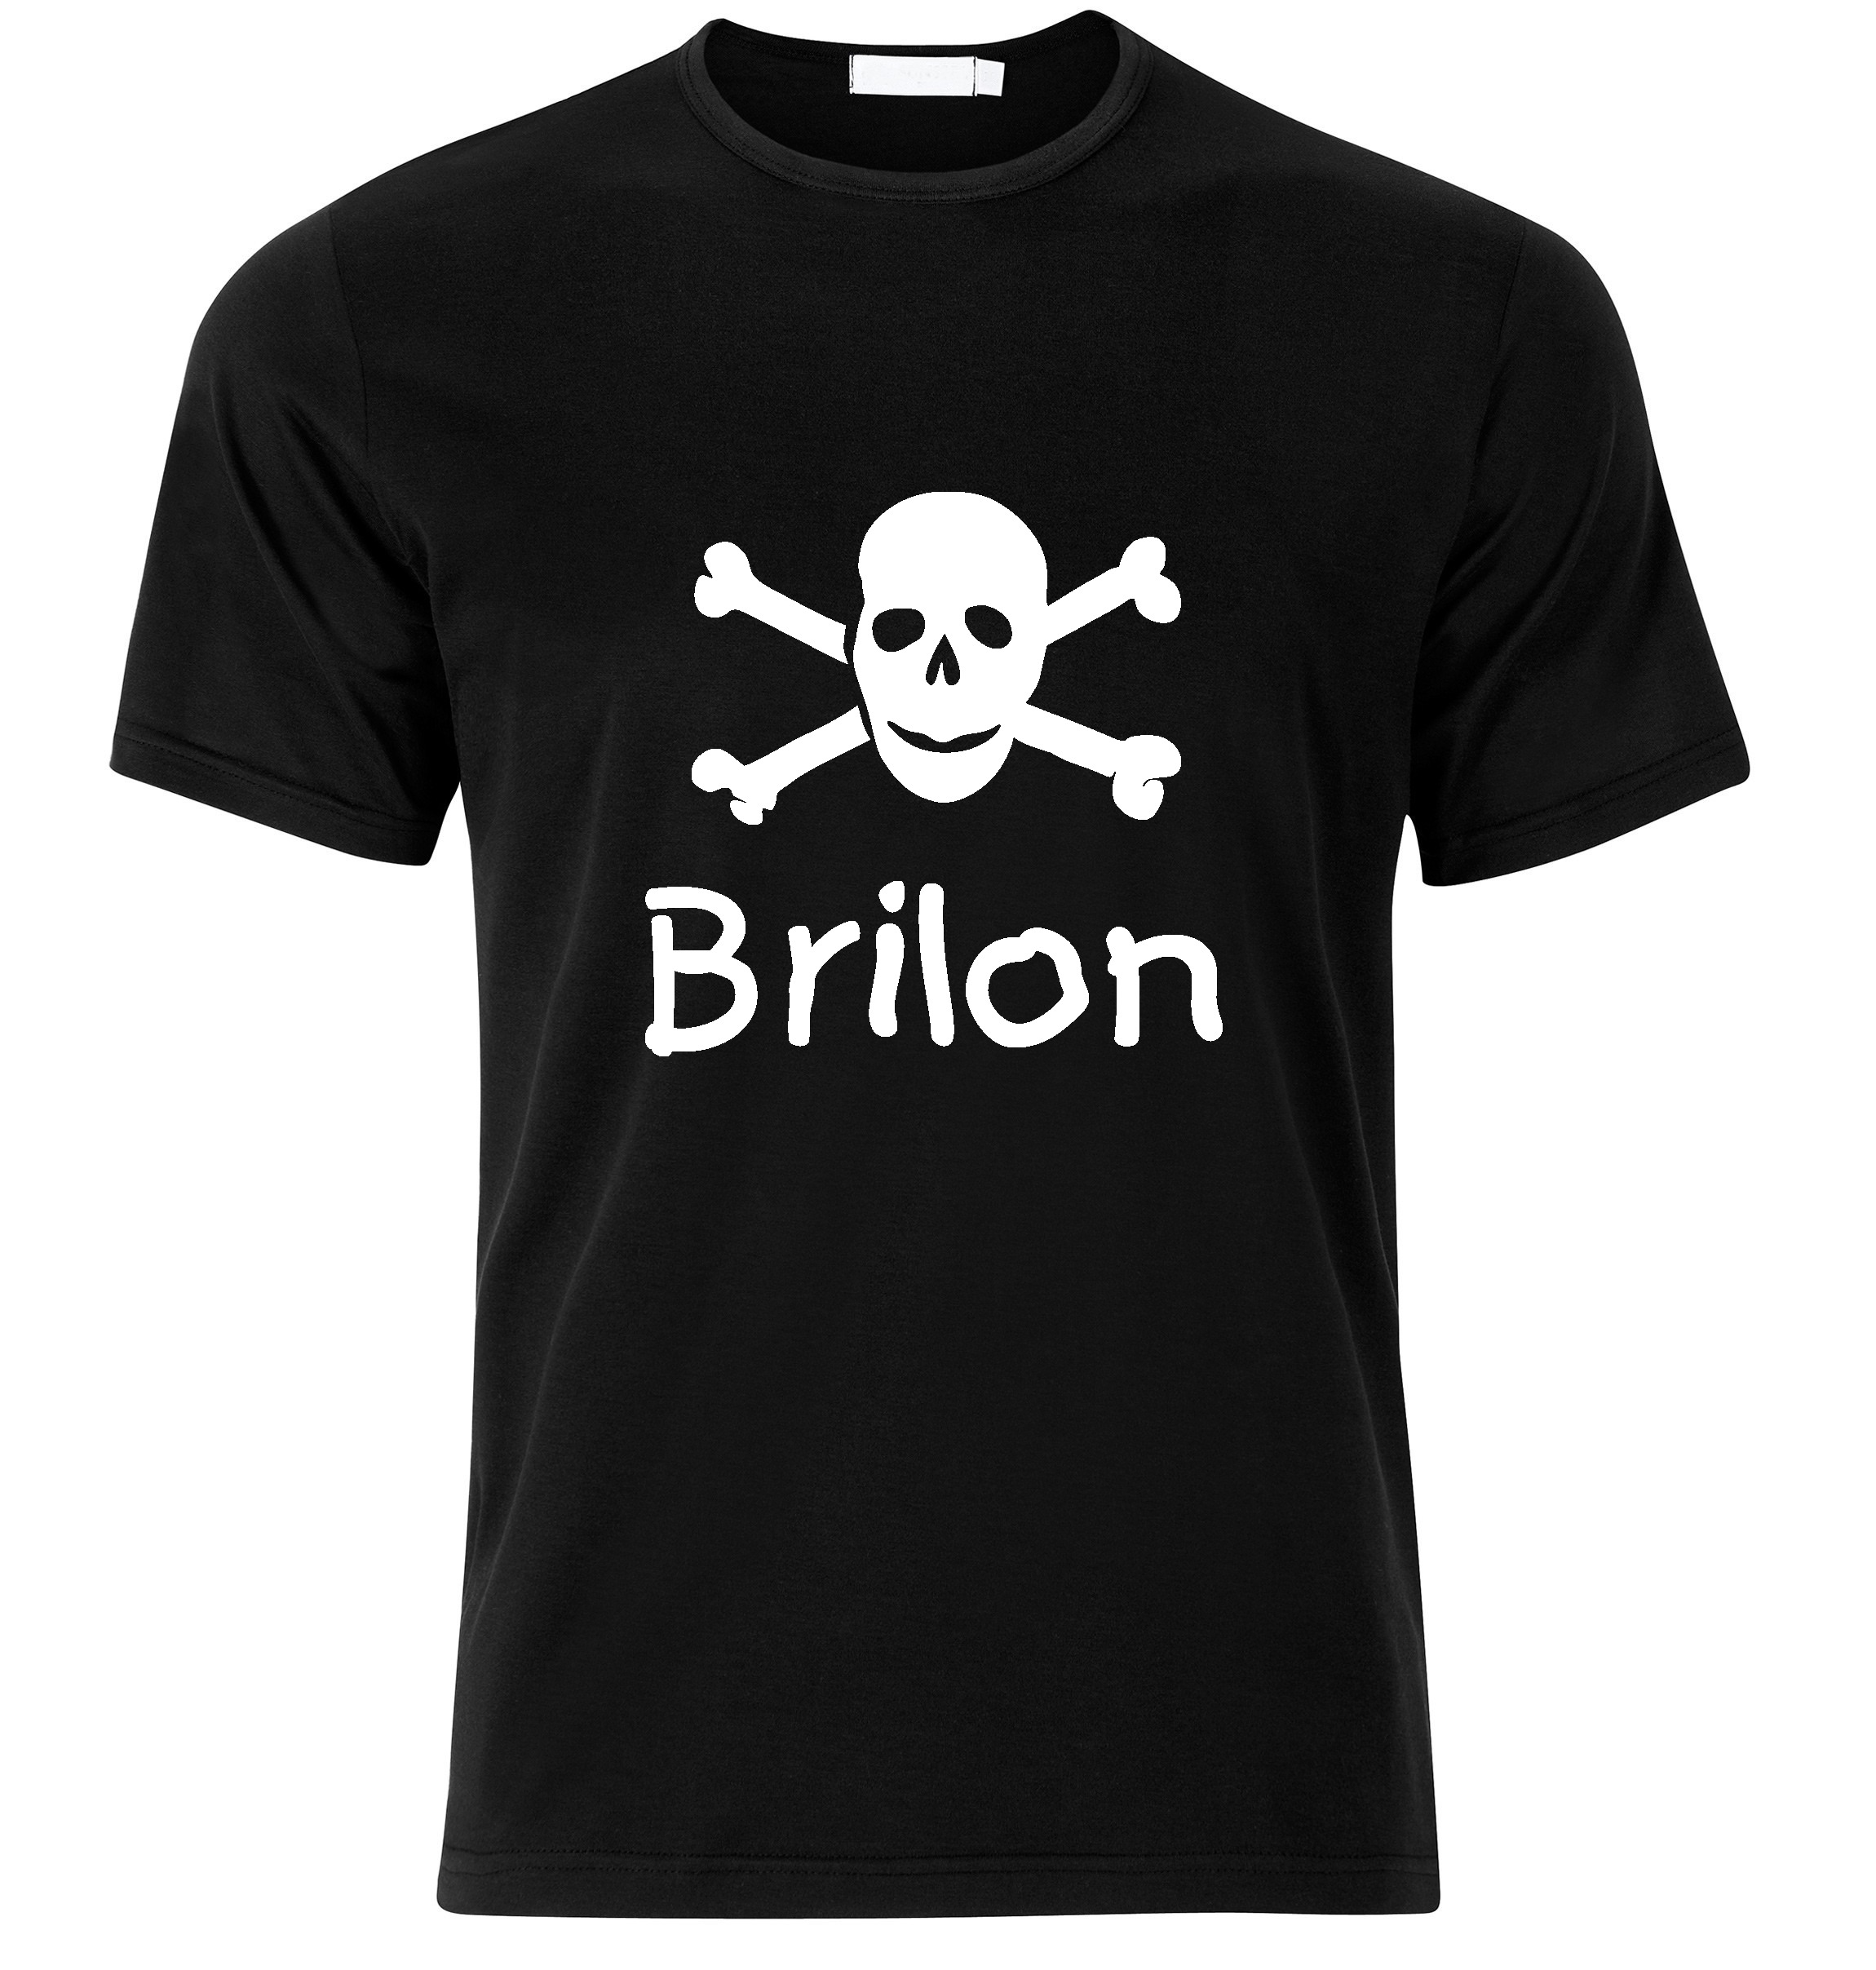 T-Shirt Brilon Jolly Roger, Totenkopf